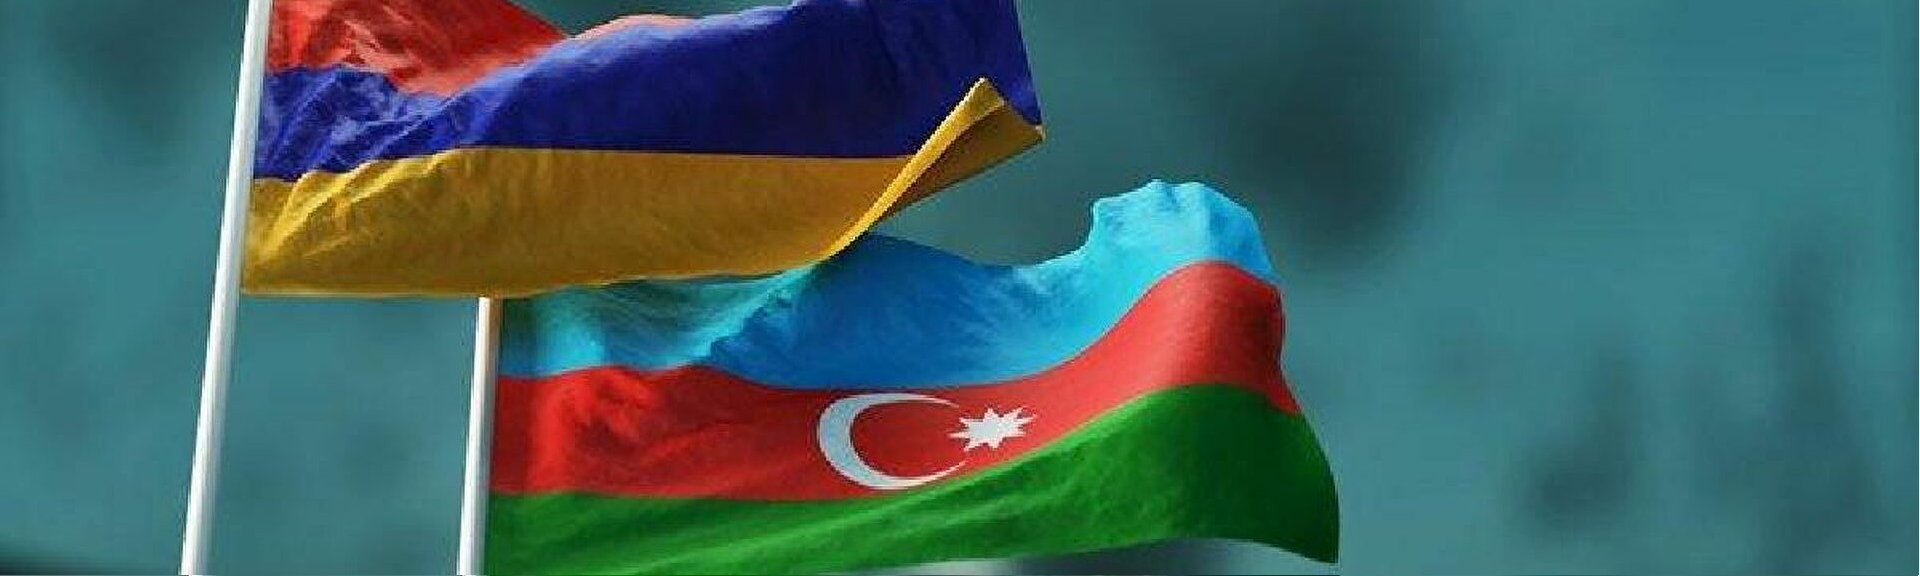 Azerbaycan’dan Ermenistan’a müzakere çağrısı